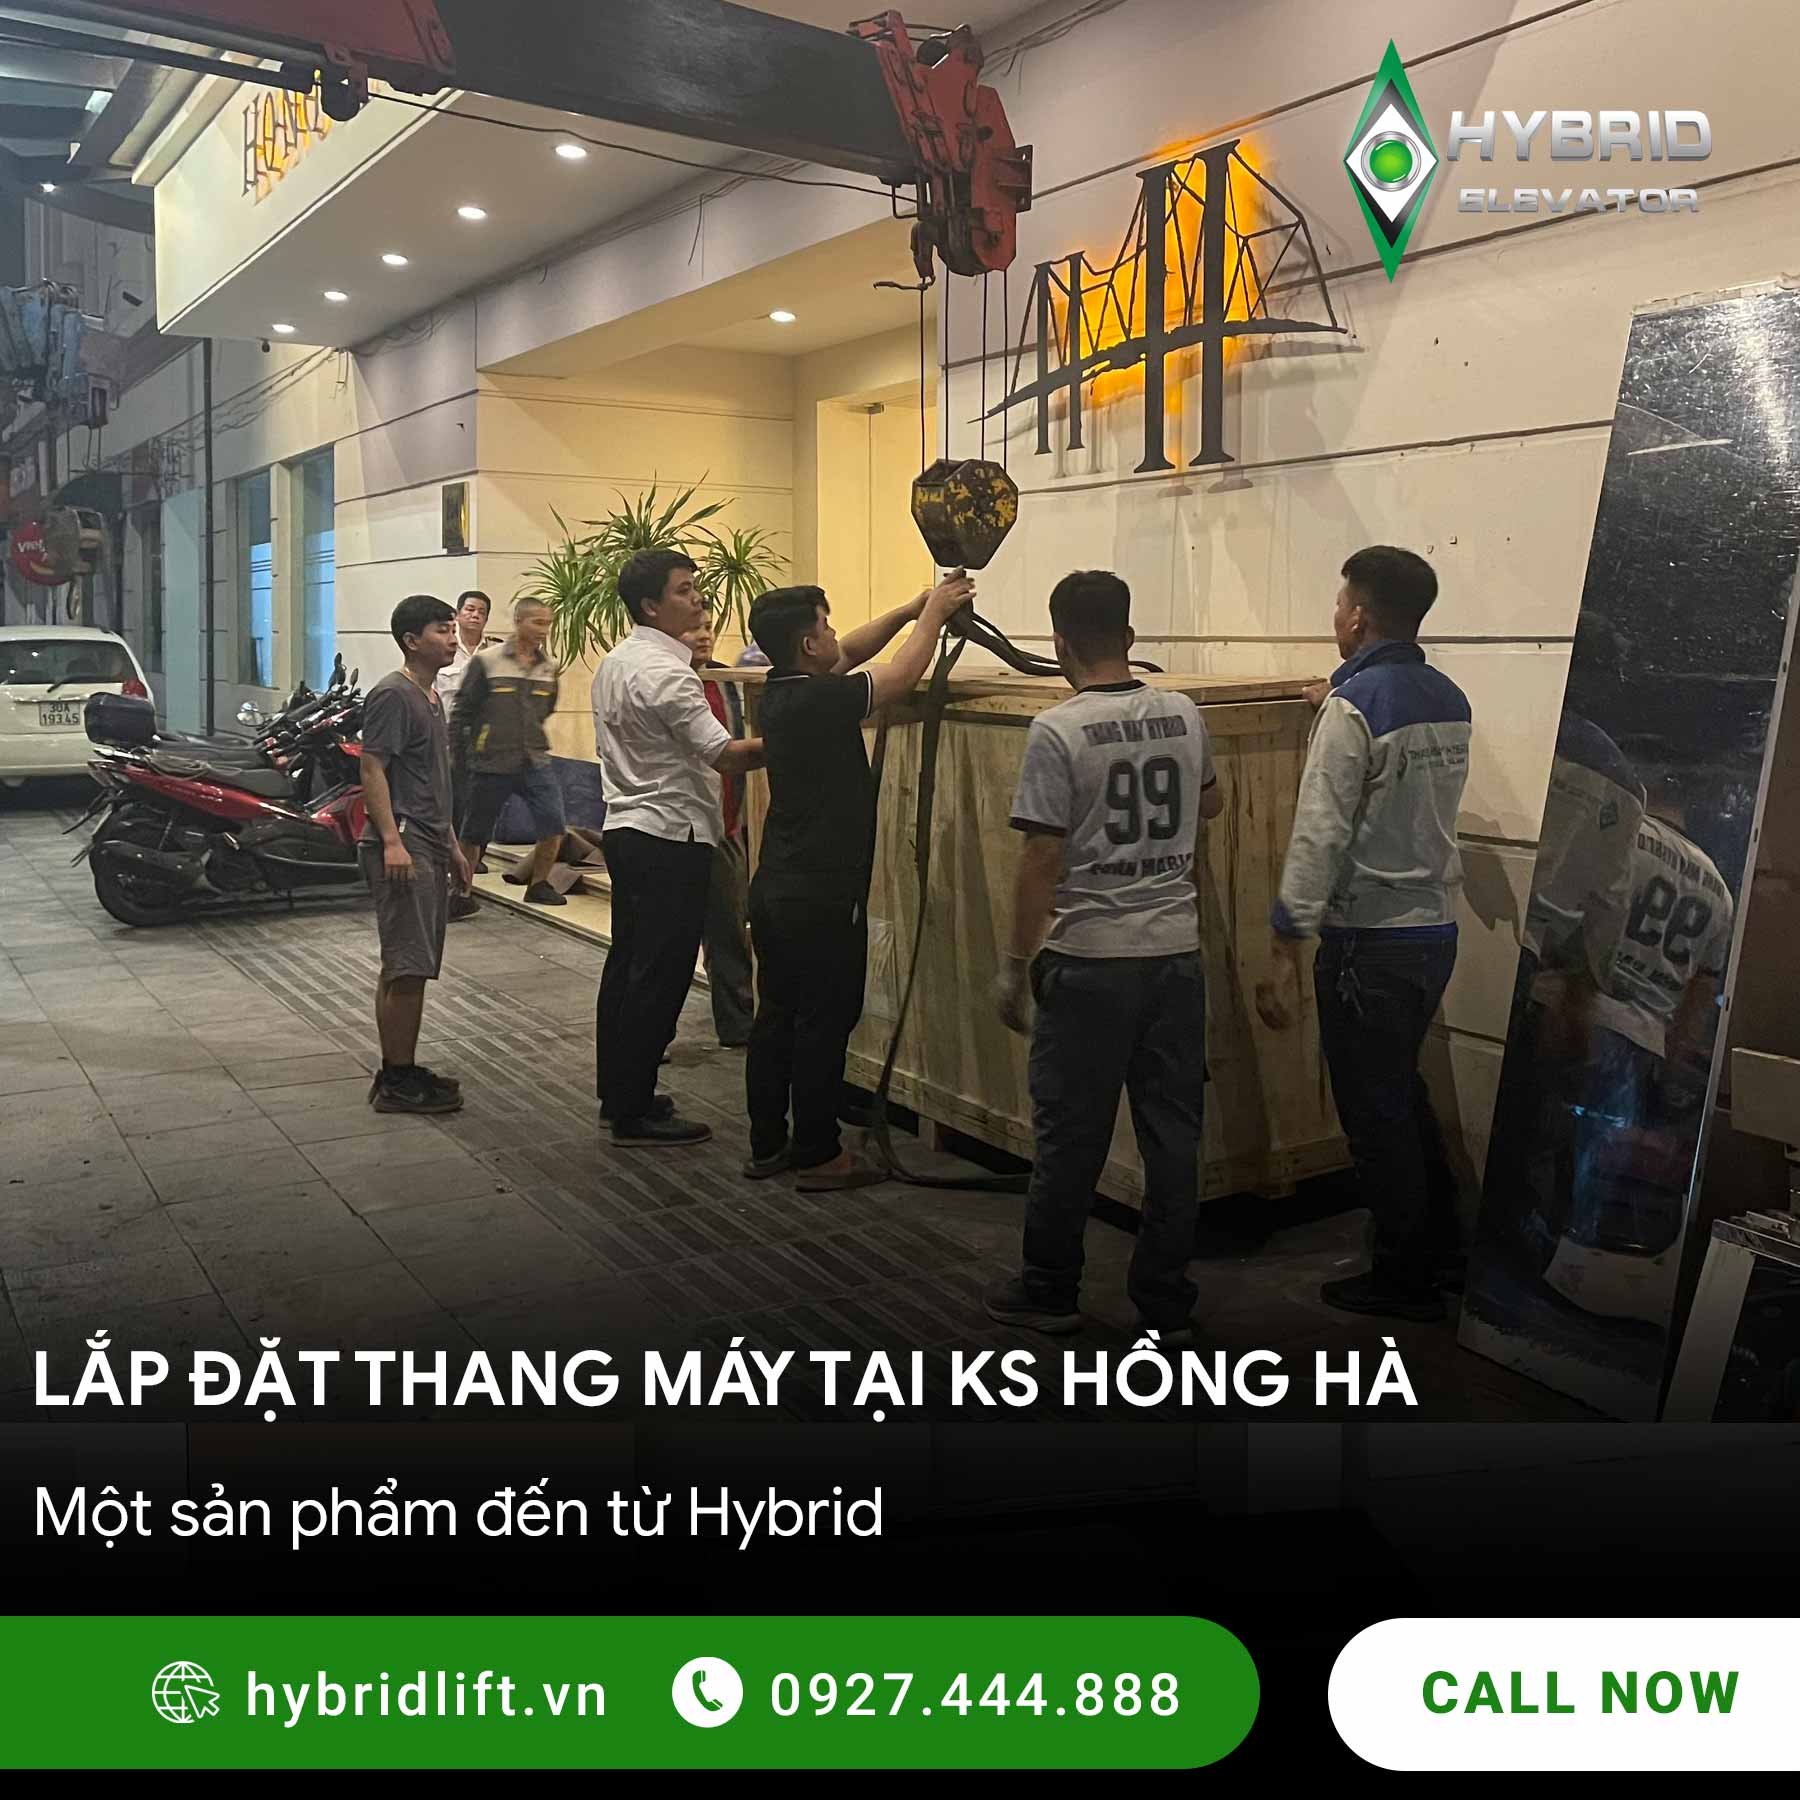 Hybrid triển khai lắp đặt thang máy tại khách sạn Hồng Hà, Hà Nội